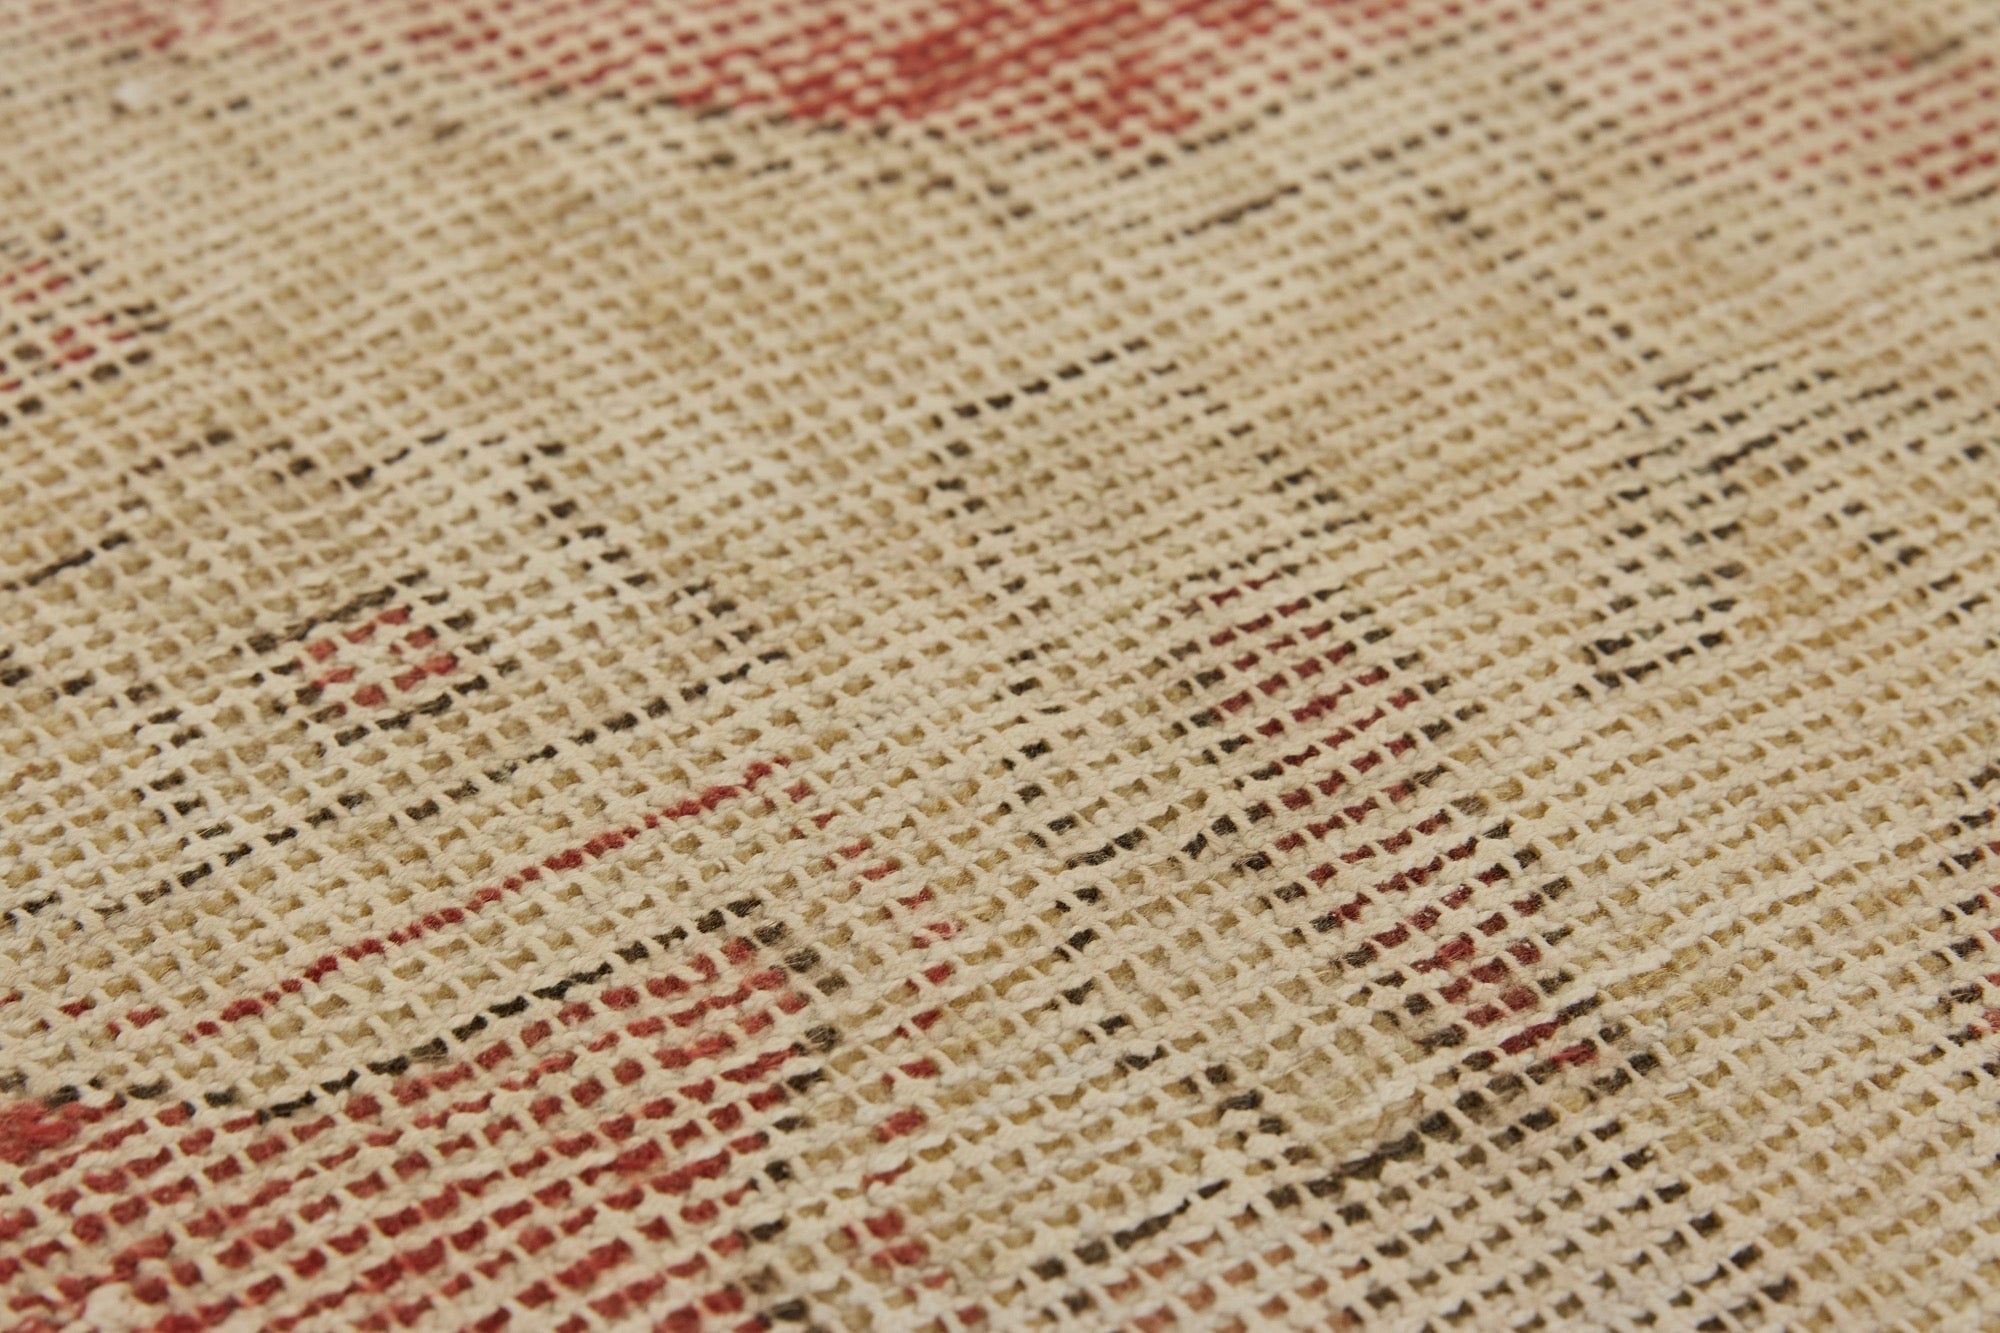 Gida | Time-Honored Turkish Rug | Artisanal Carpet Mastery | Kuden Rugs